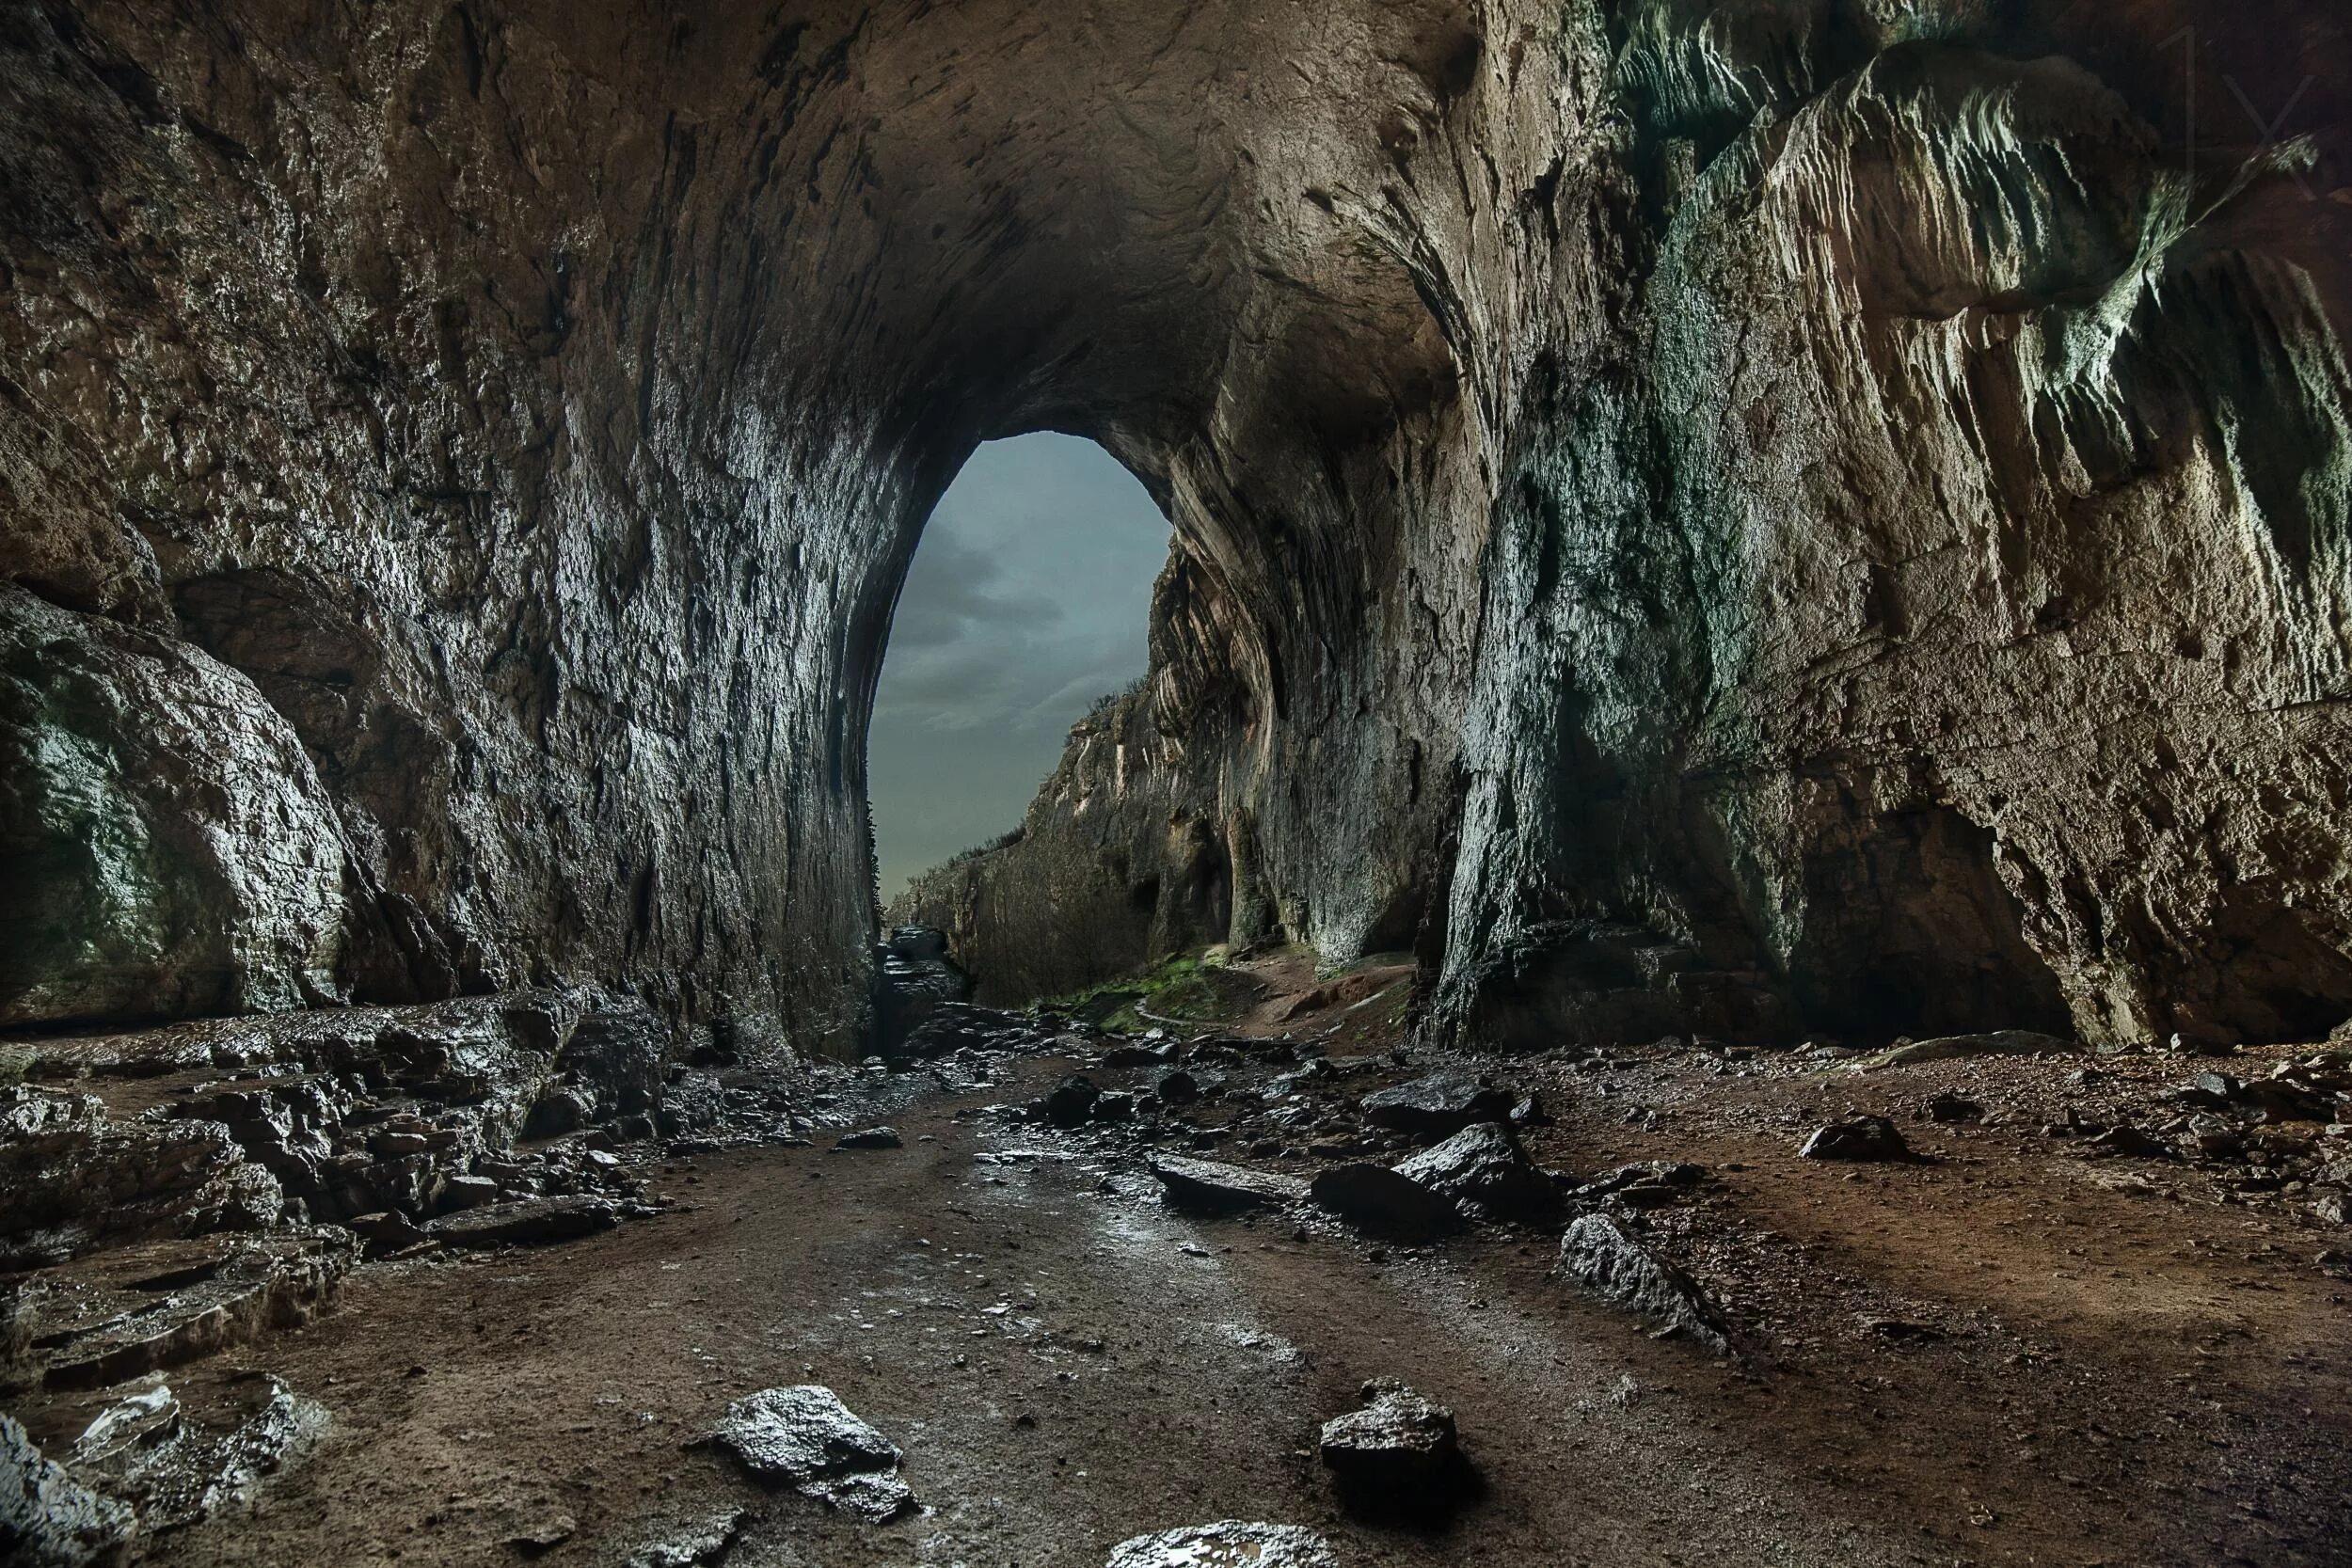 Cave v. Пещера Харрисонс-Кейв. Пещера Графский грот. Пещера тэнара. Пещера Стоун-Боунз.